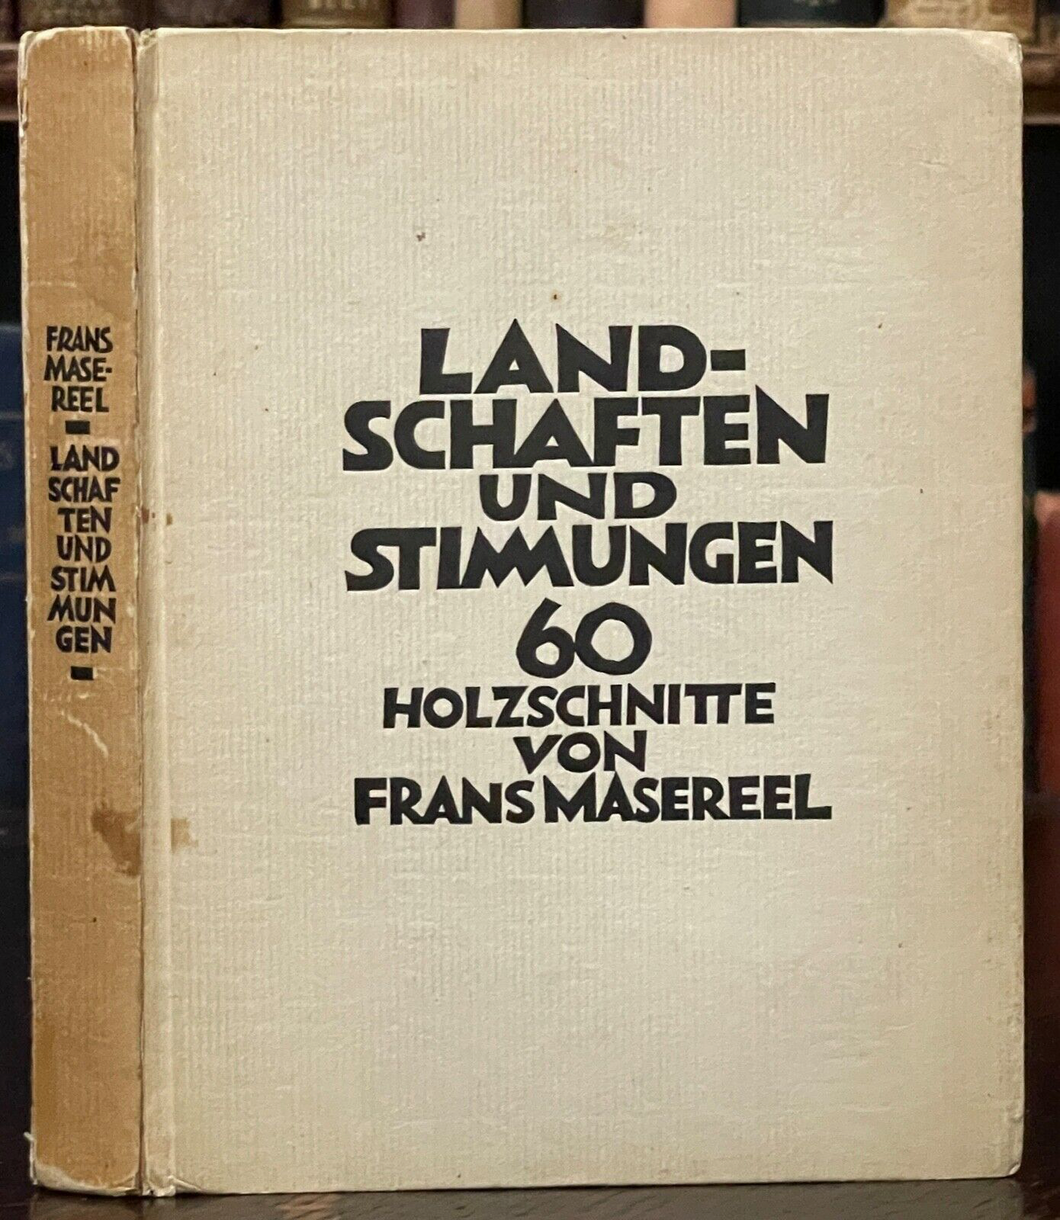 FRANS MASEREEL - LANDSCHAFTEN UND STIMMUNGEN - 1st 1929 - 60 WOODBLOCK PRINTS